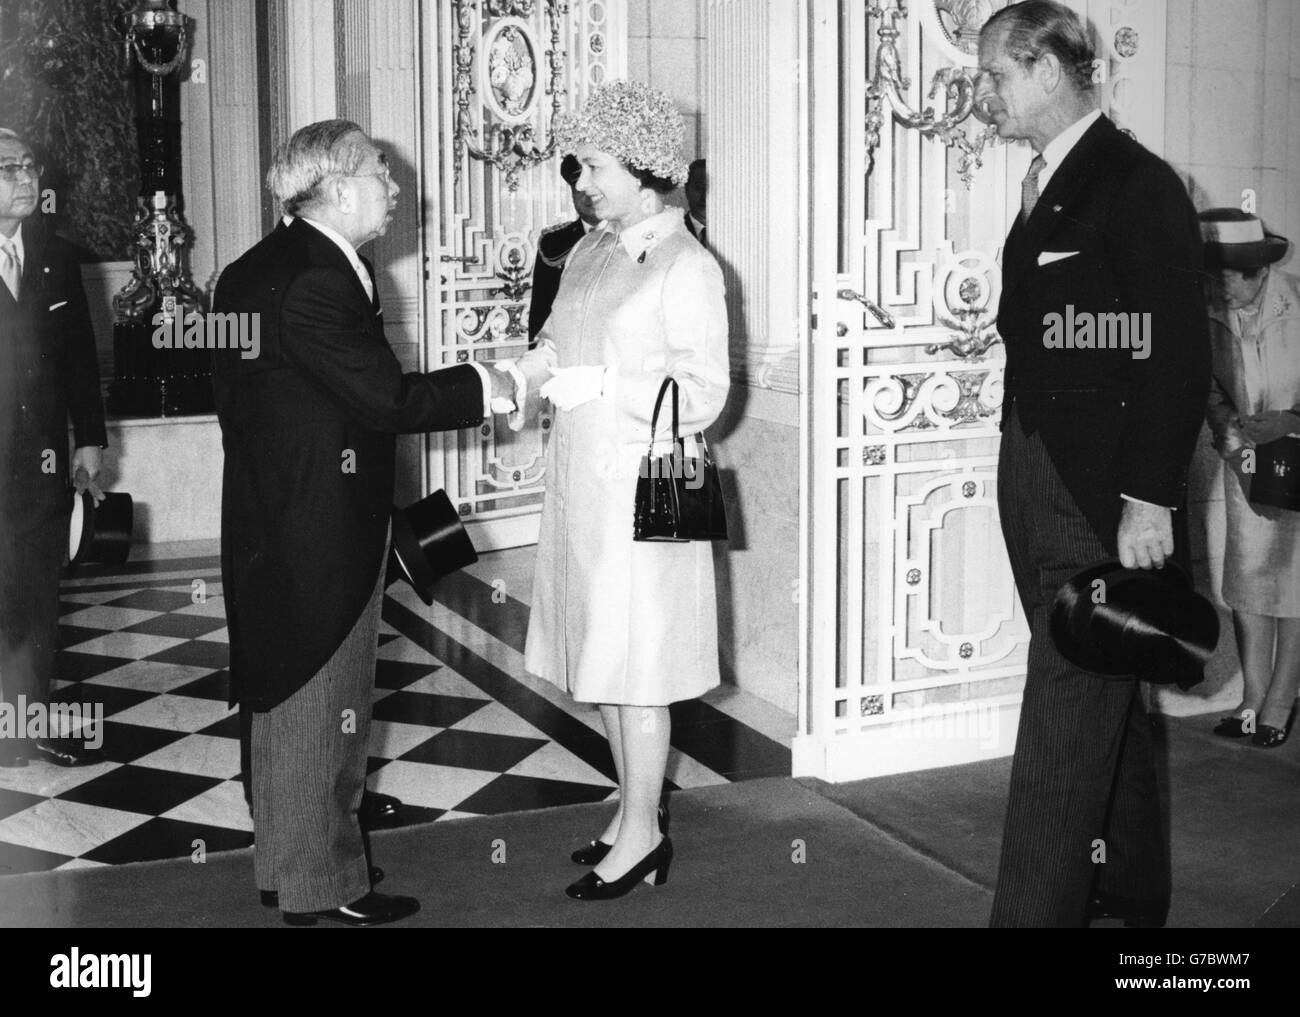 Königin Elizabeth II. Und der Herzog von Edinburgh werden von Kaiser Hirohito von Japan bei einer Begrüßungszeremonie im Government Guesthouse in Tokio begrüßt. Es war das erste Mal, dass ein regierender britischer Monarch Japan besucht hat. Stockfoto